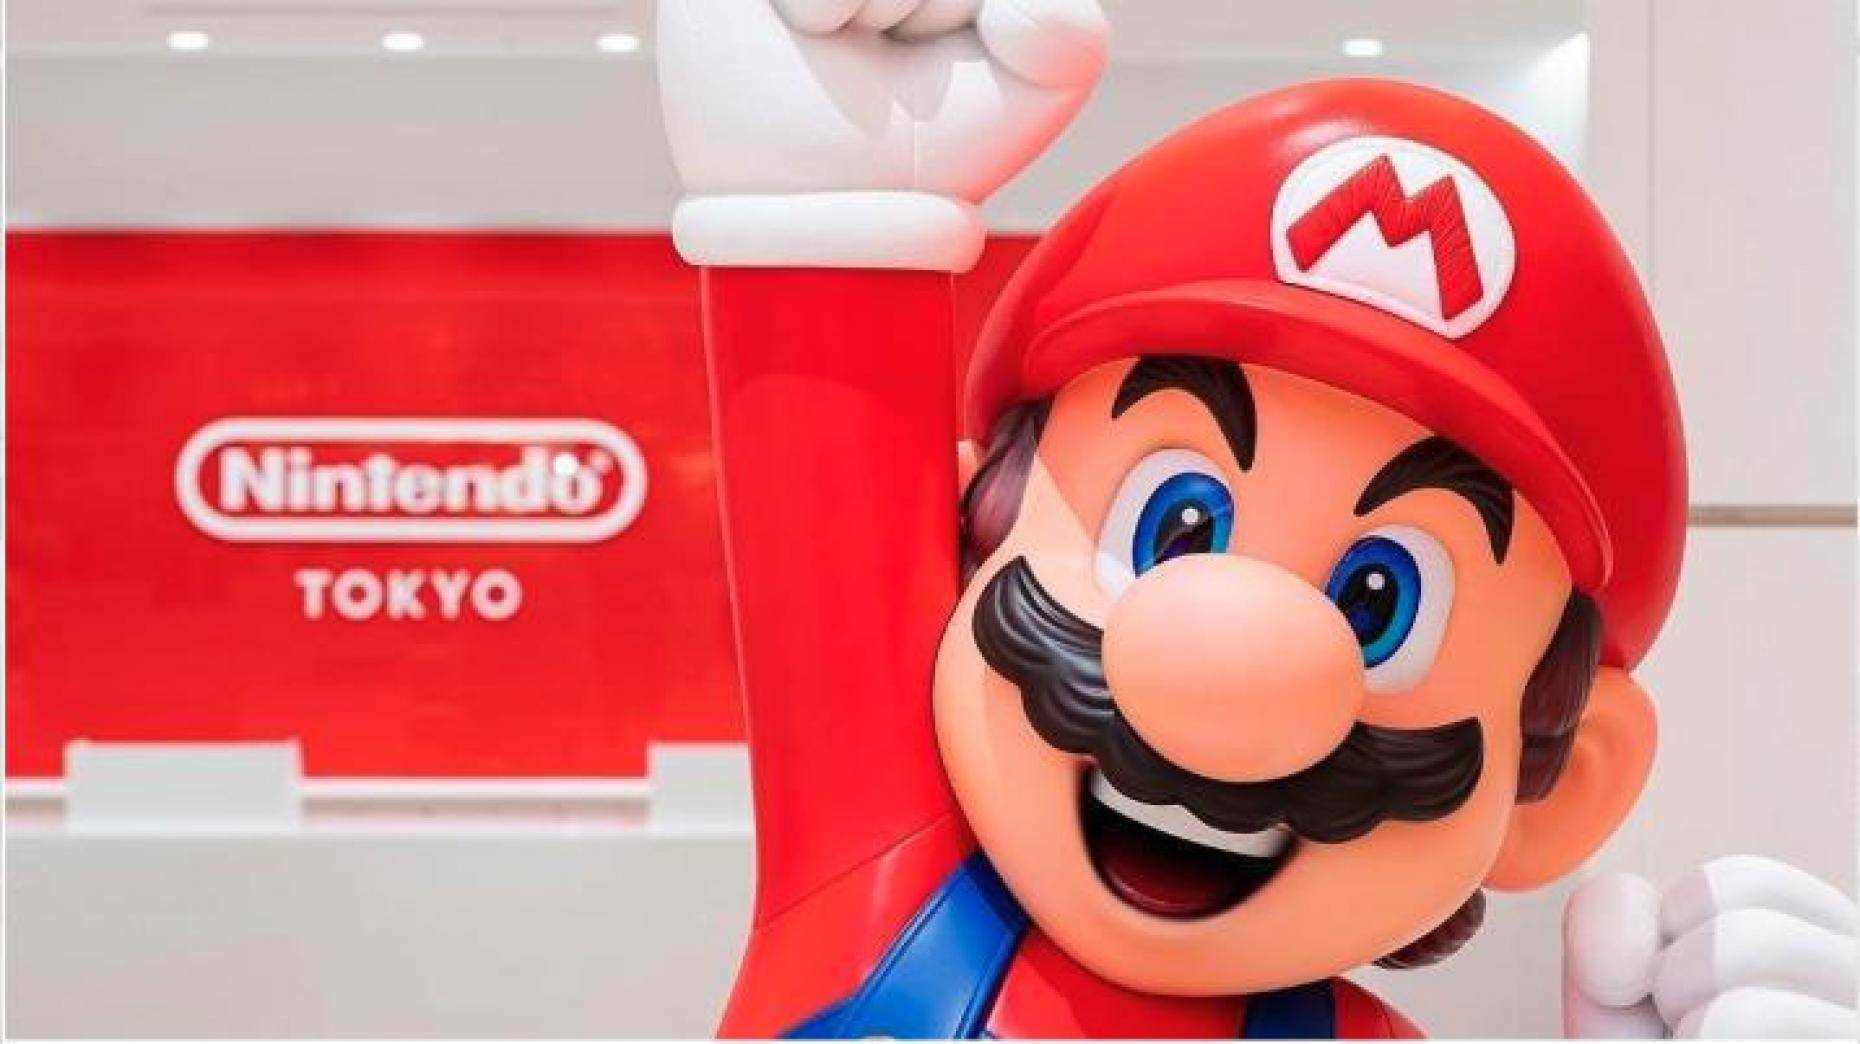 La tienda oficial de Nintendo en Tokio presenta nuevo set de cocina inspirado en Mario Bros. 1